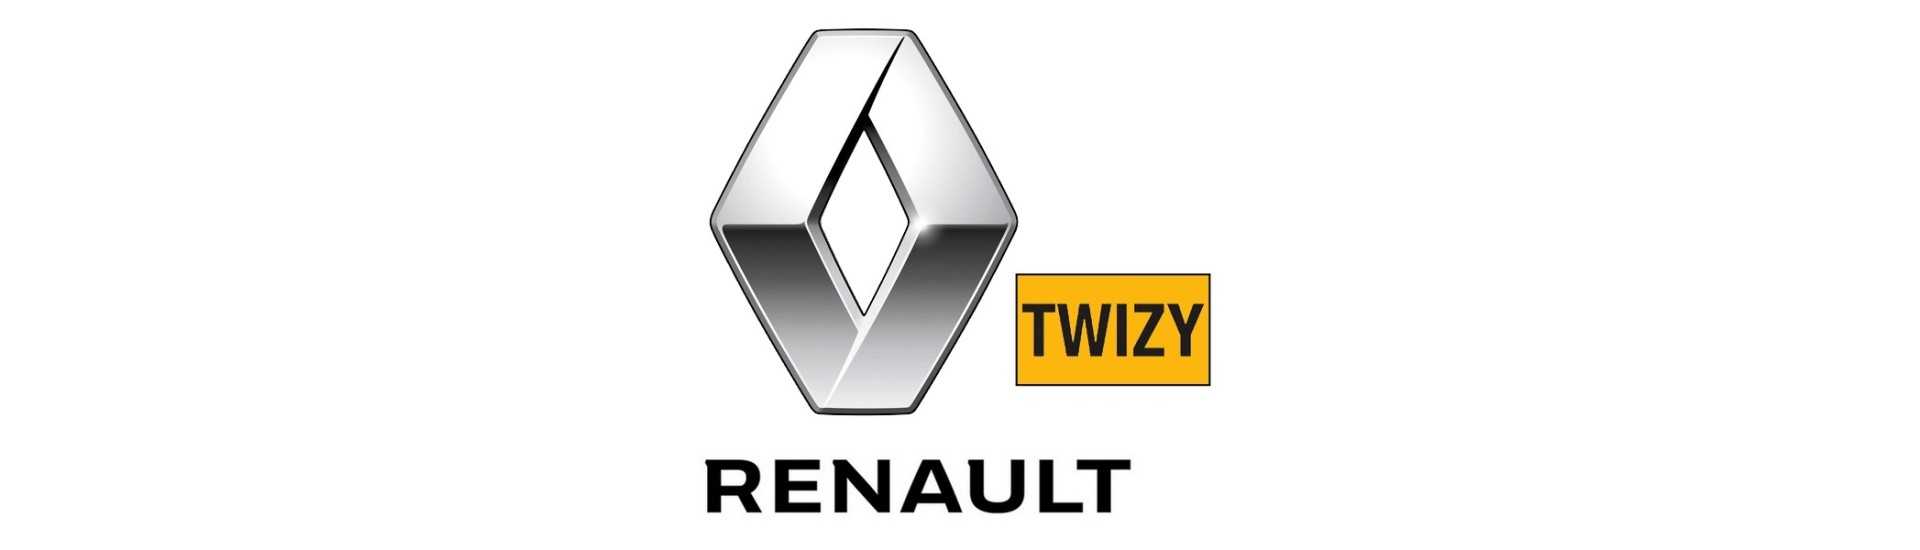 Flug zum besten Preis für Auto ohne Lizenz Renault Twizy